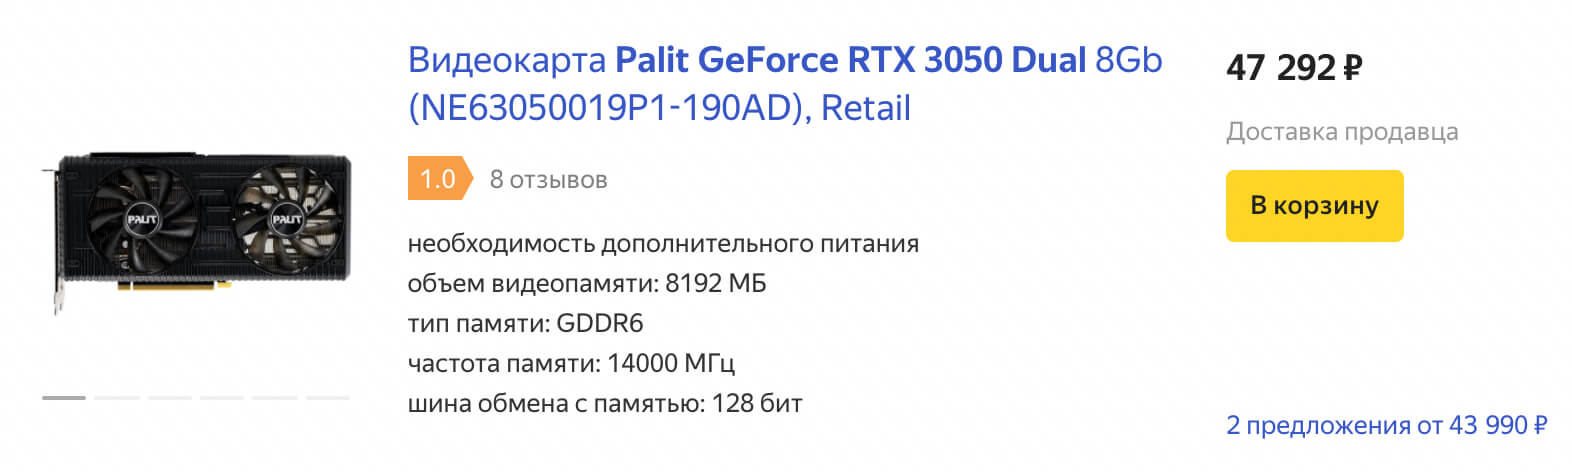 Реально ли купить GeForce RTX 3050 в России за 25 000 рублей?